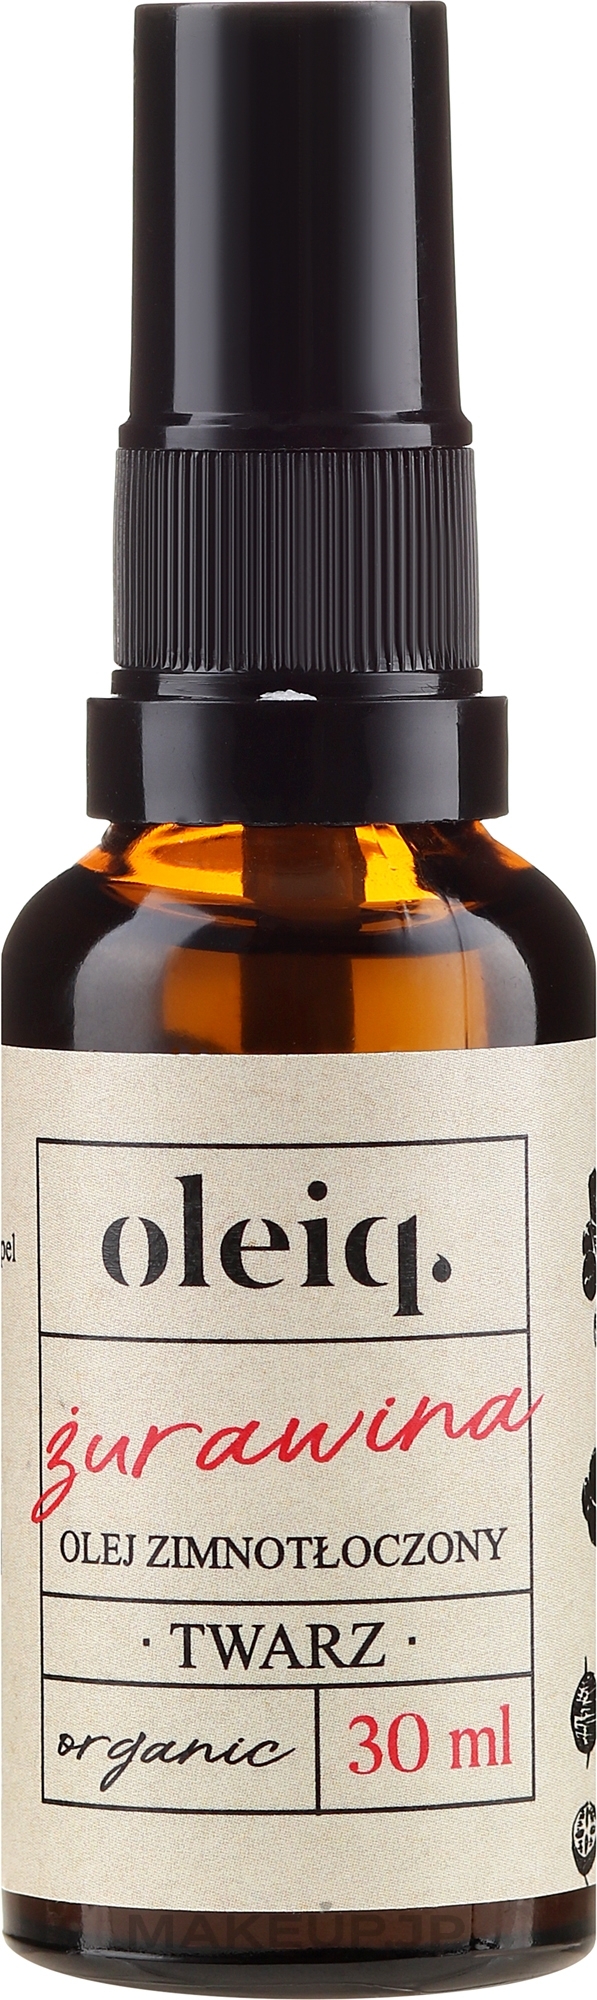 Cranberry Face Oil - Oleiq Cranberry Face Oil — photo 30 ml